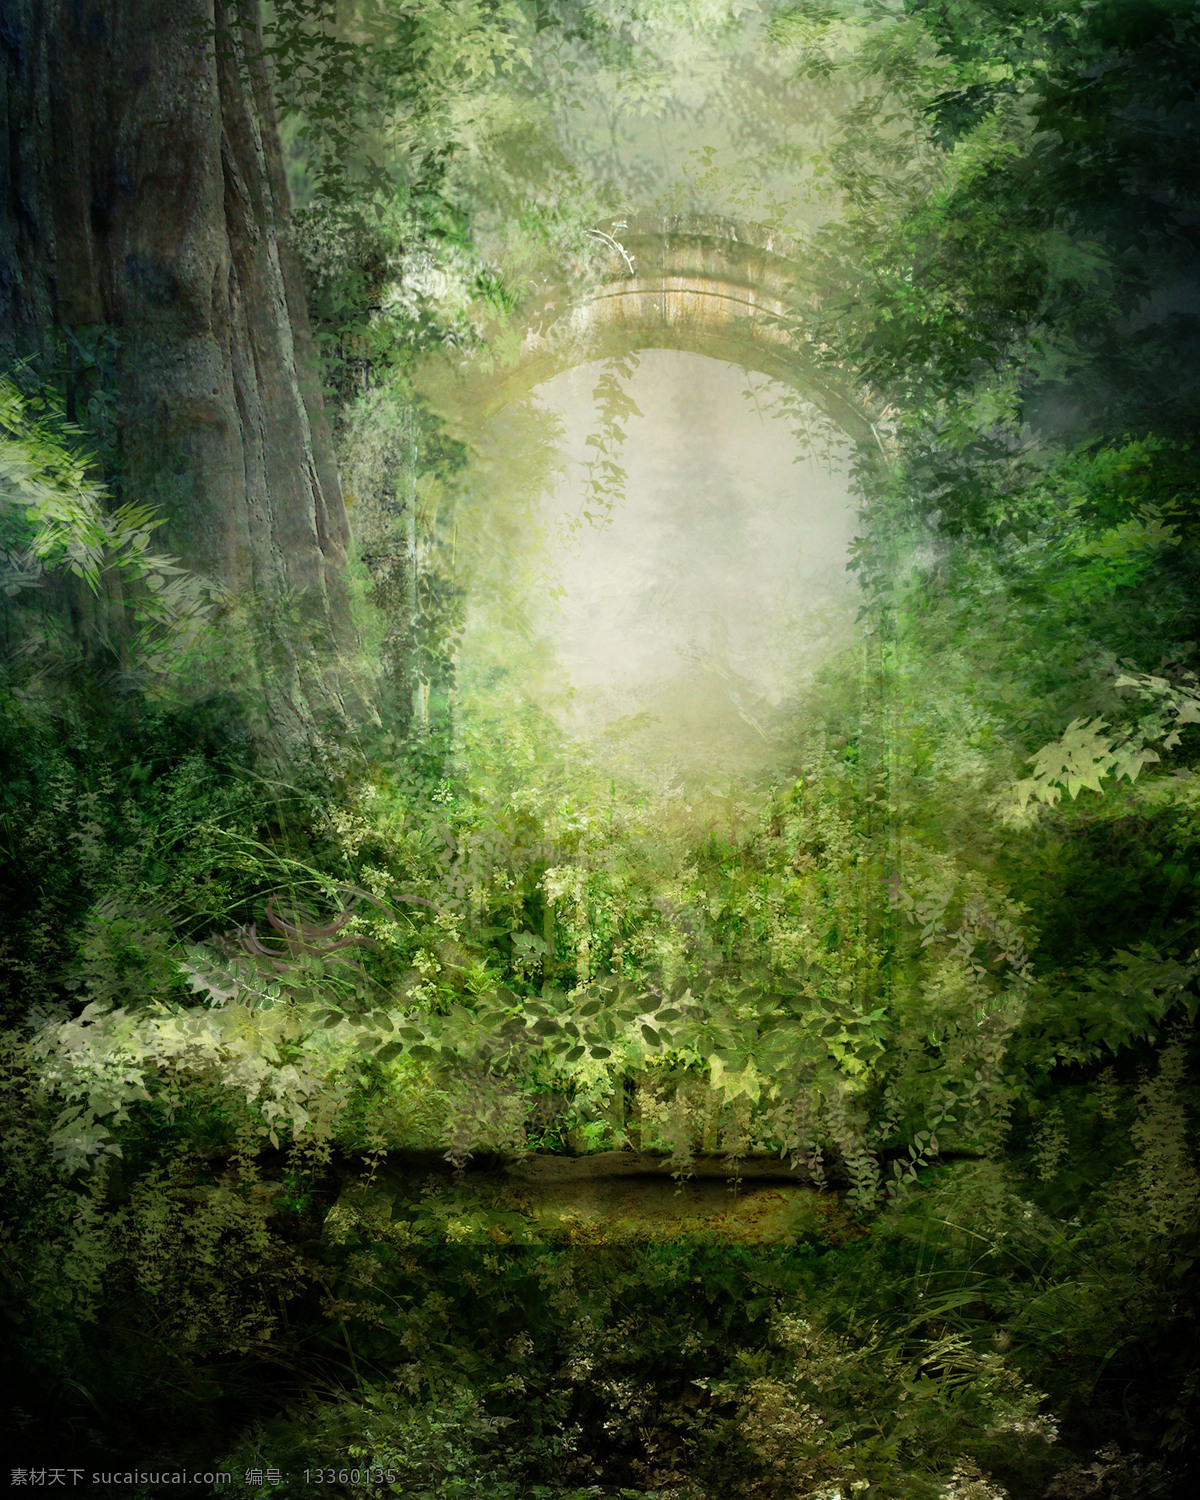 梦幻自然 梦幻 童话 唯美 大自然 森林 草地 朦胧 窗户 藤蔓 自然风景 自然景观 黑色